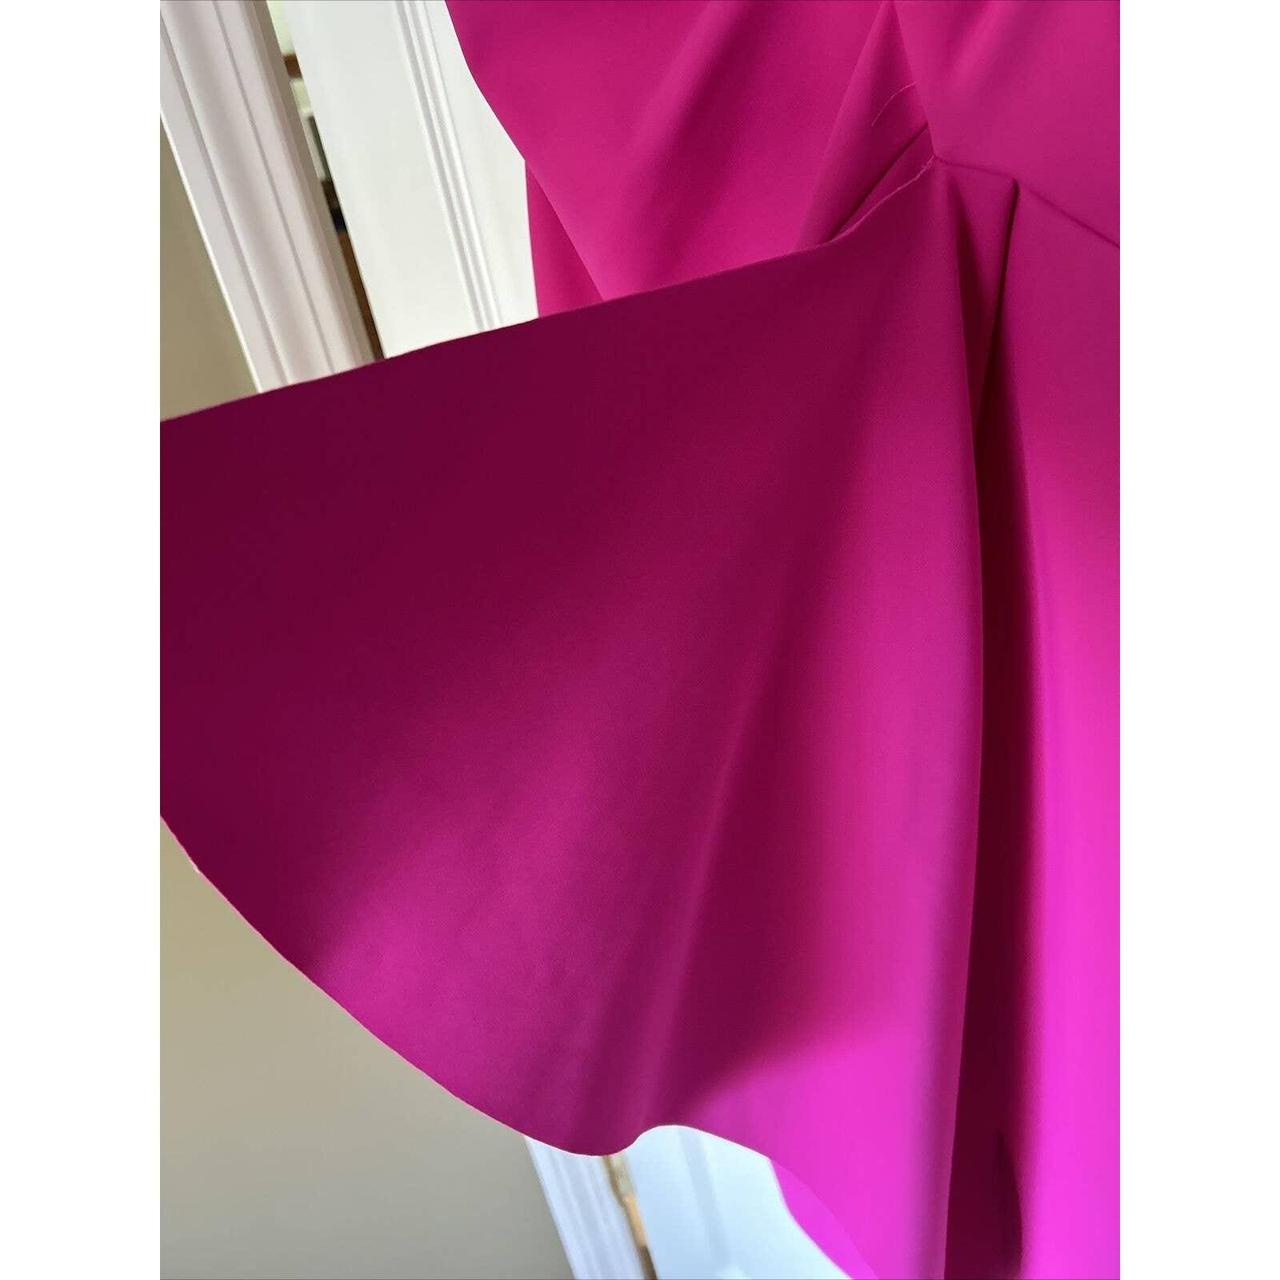 Chiara Boni La Petite Robe Women's Pink Dress (6)